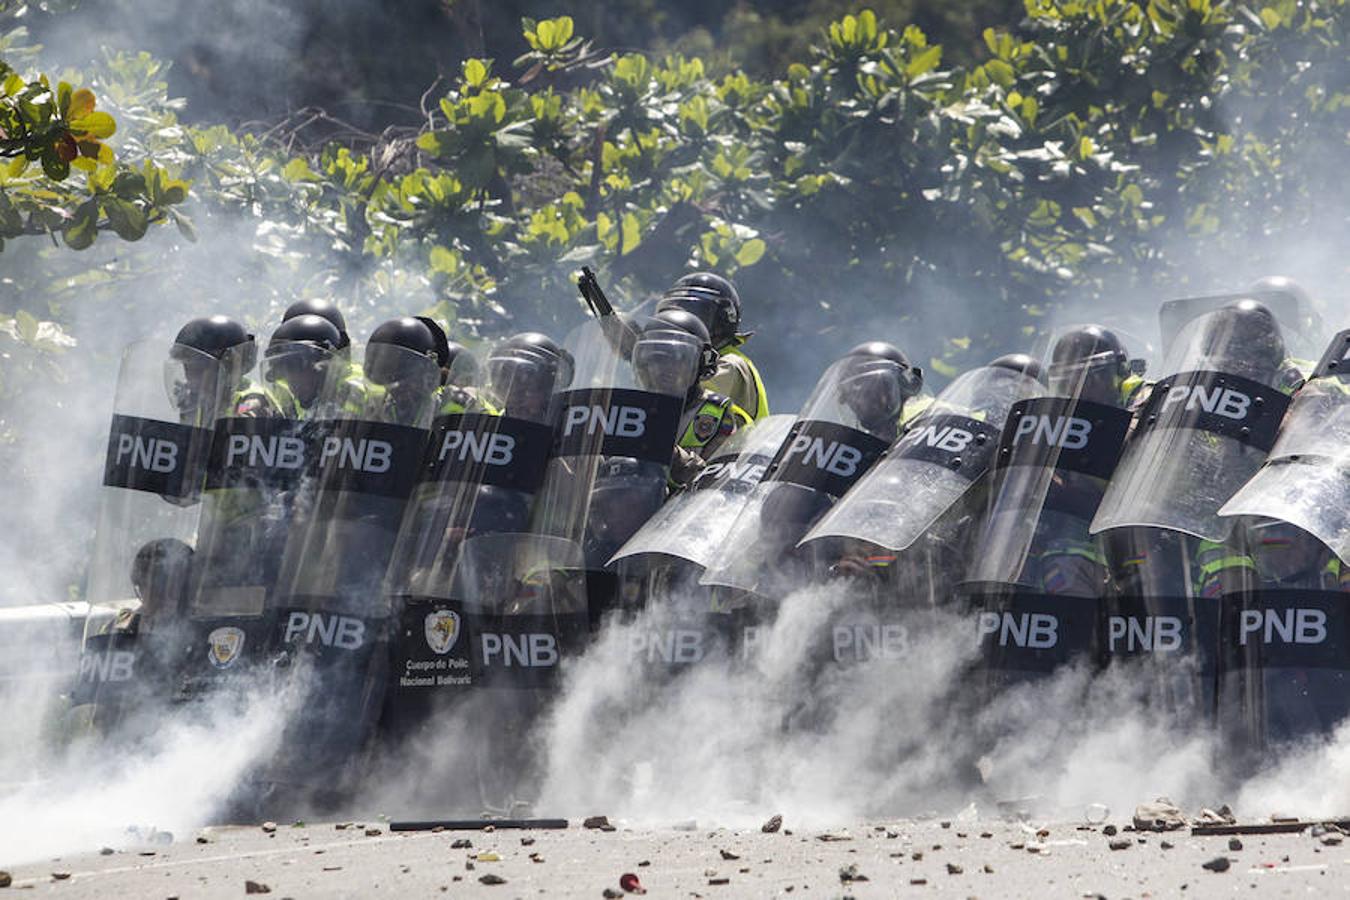 Las fuerzas de seguridad se parapetearon detrás de los escudos de los antidisturbios, desde donde lanzaron gases lacrimógenos. 